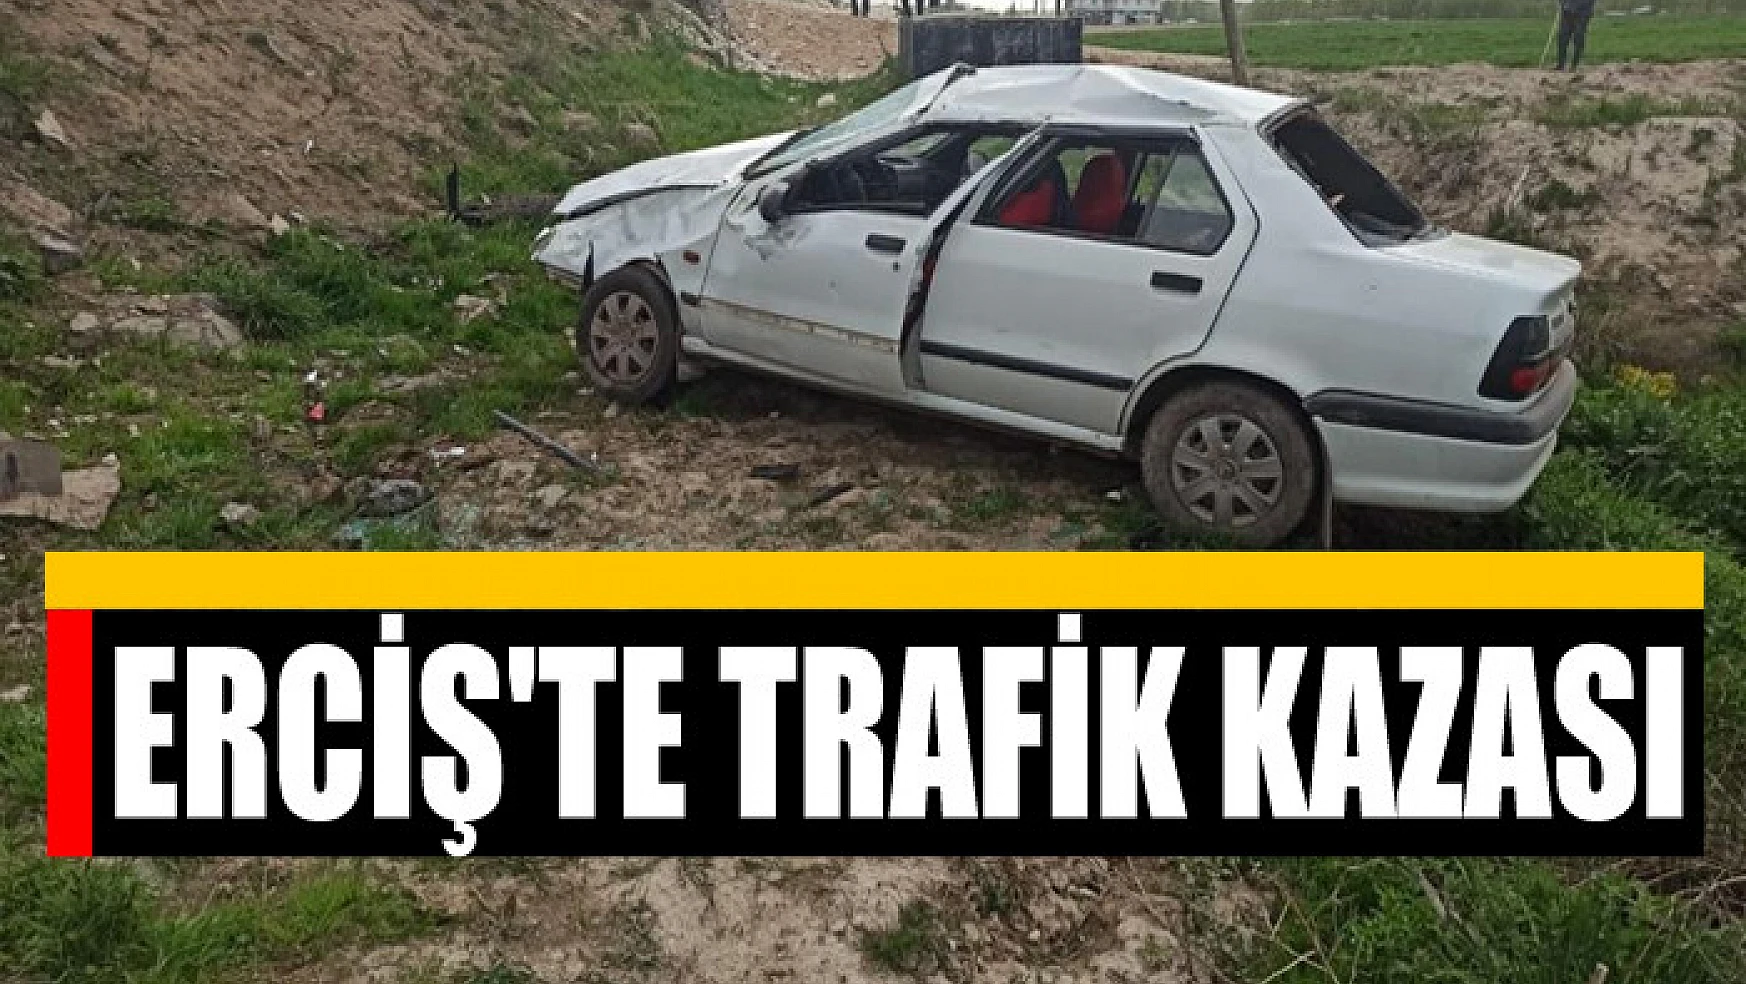 Erciş'te trafik kazası